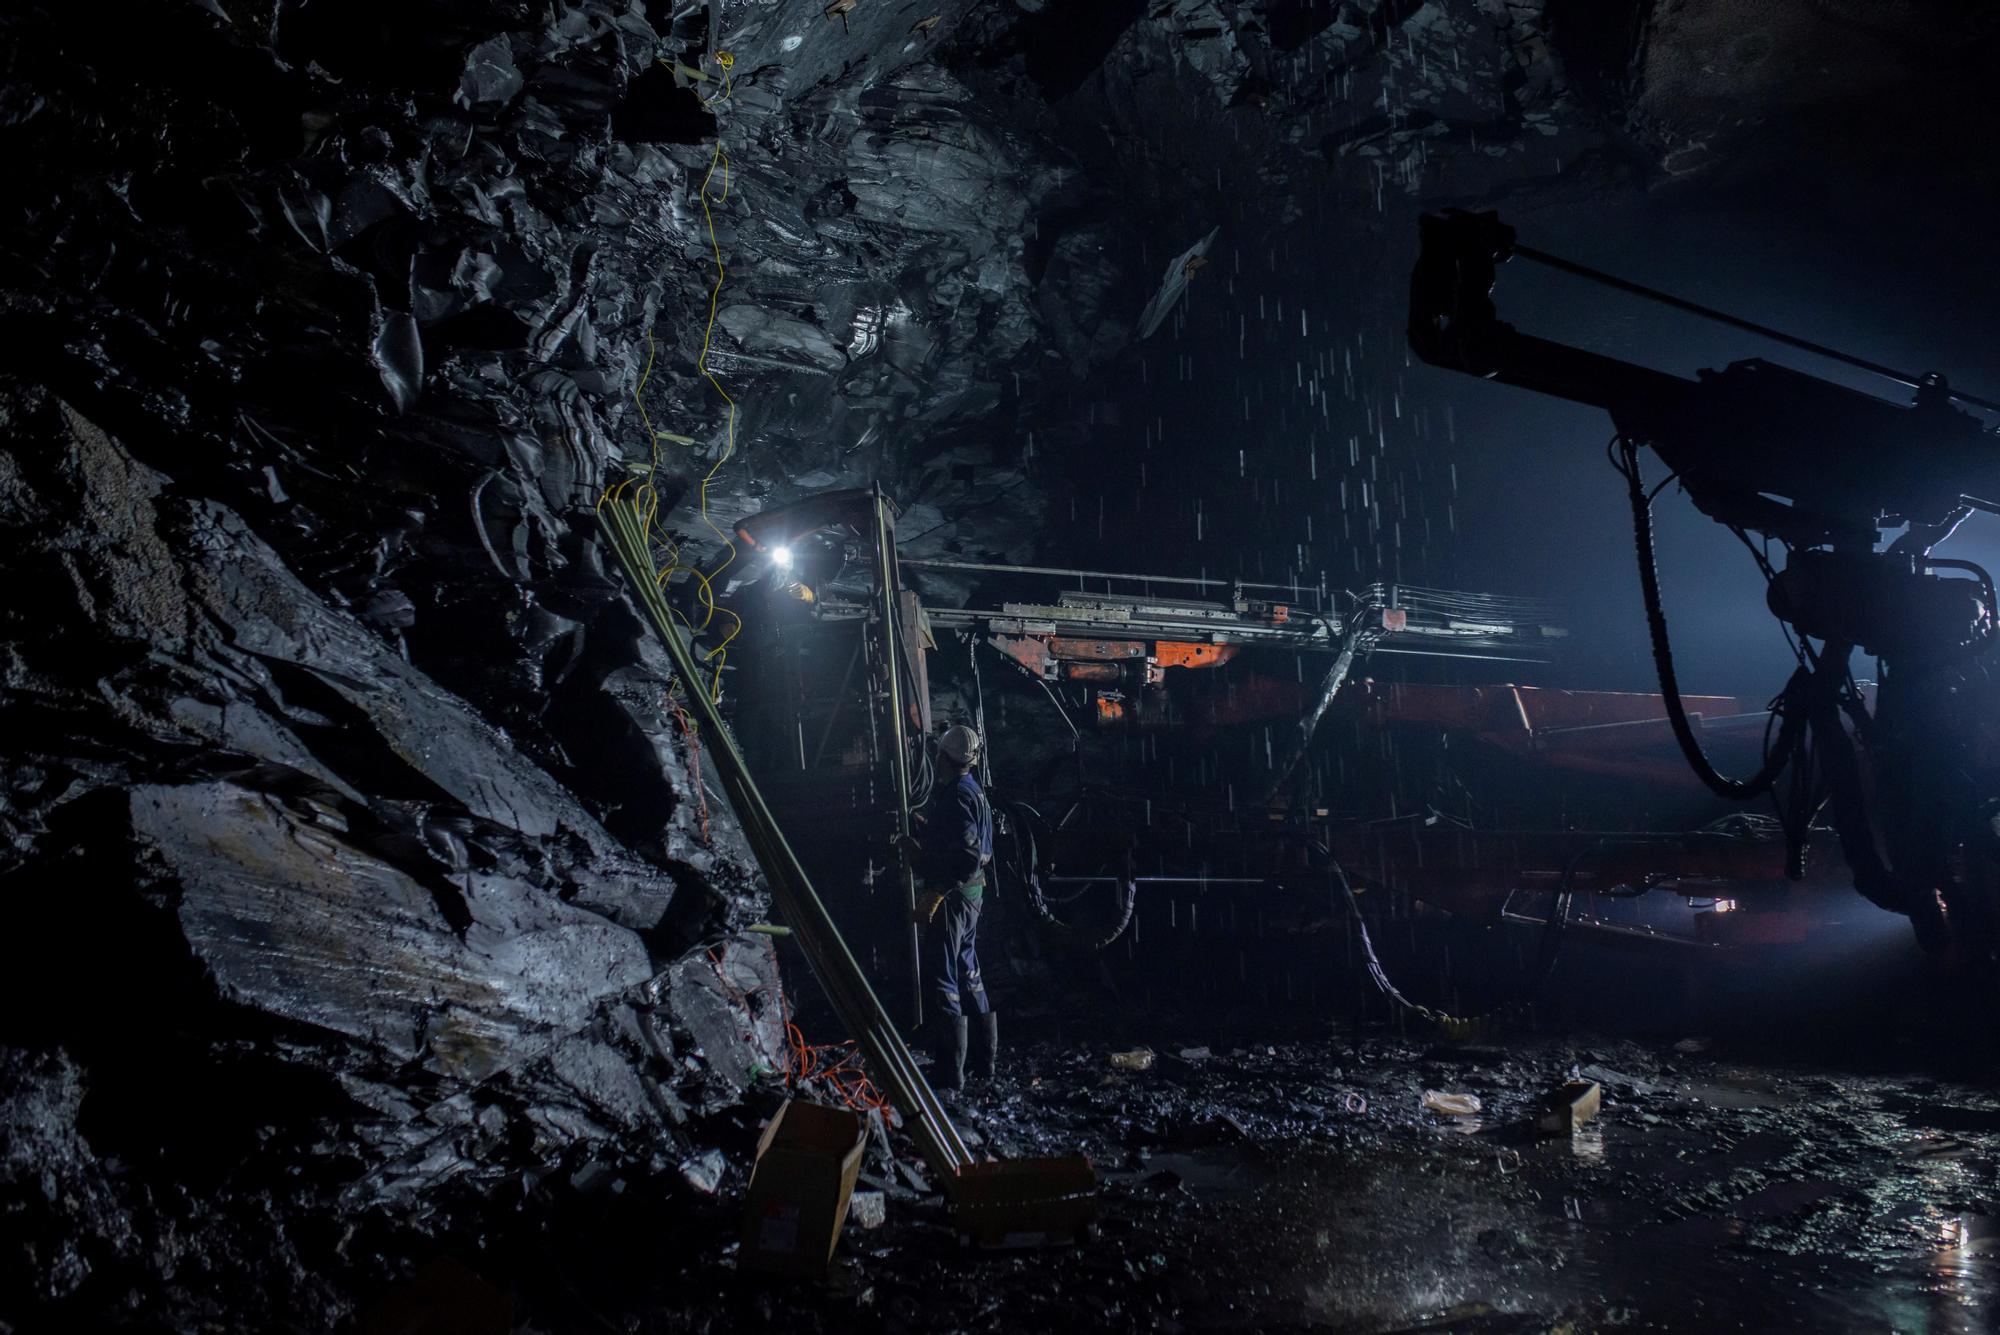 La mina más grande del mundo está en Valdeorras